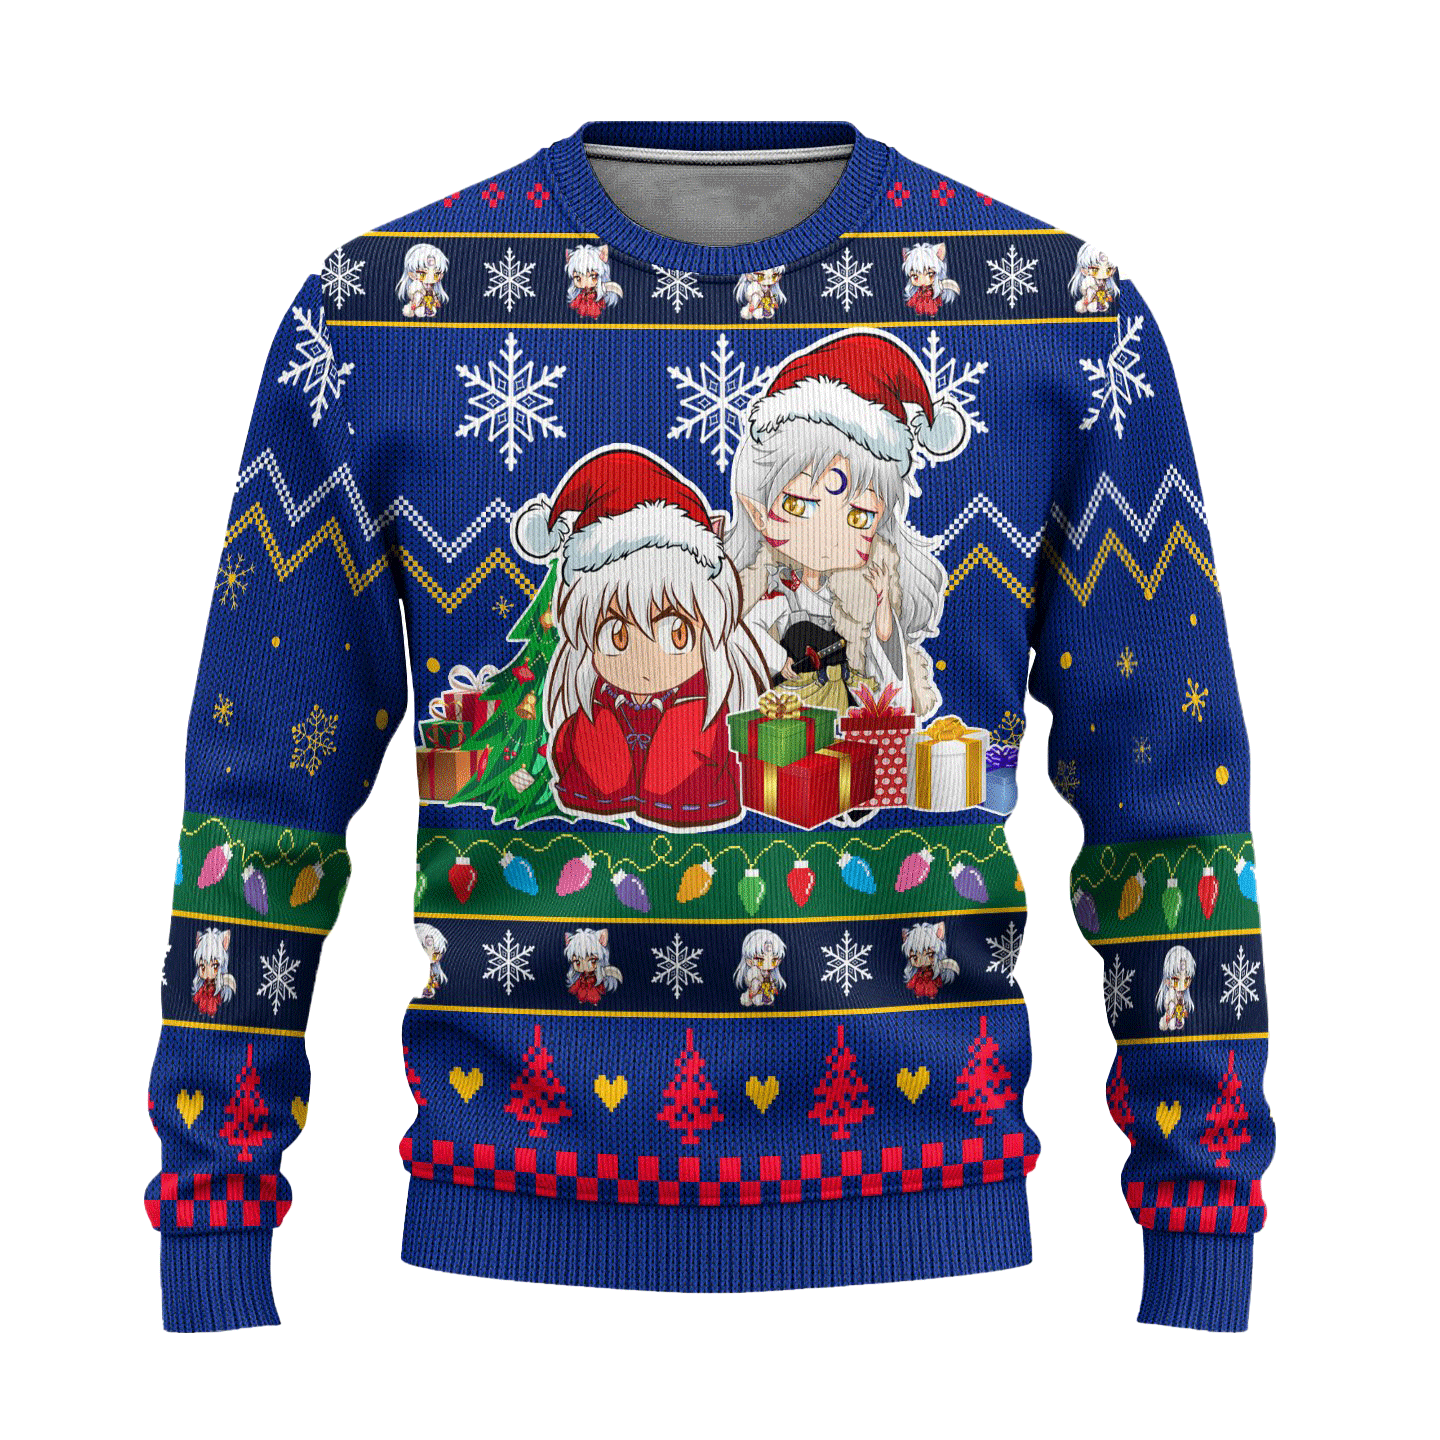 Inuyasha x Sesshomaru Anime Ugly Christmas Sweater InuYasha Xmas Gift